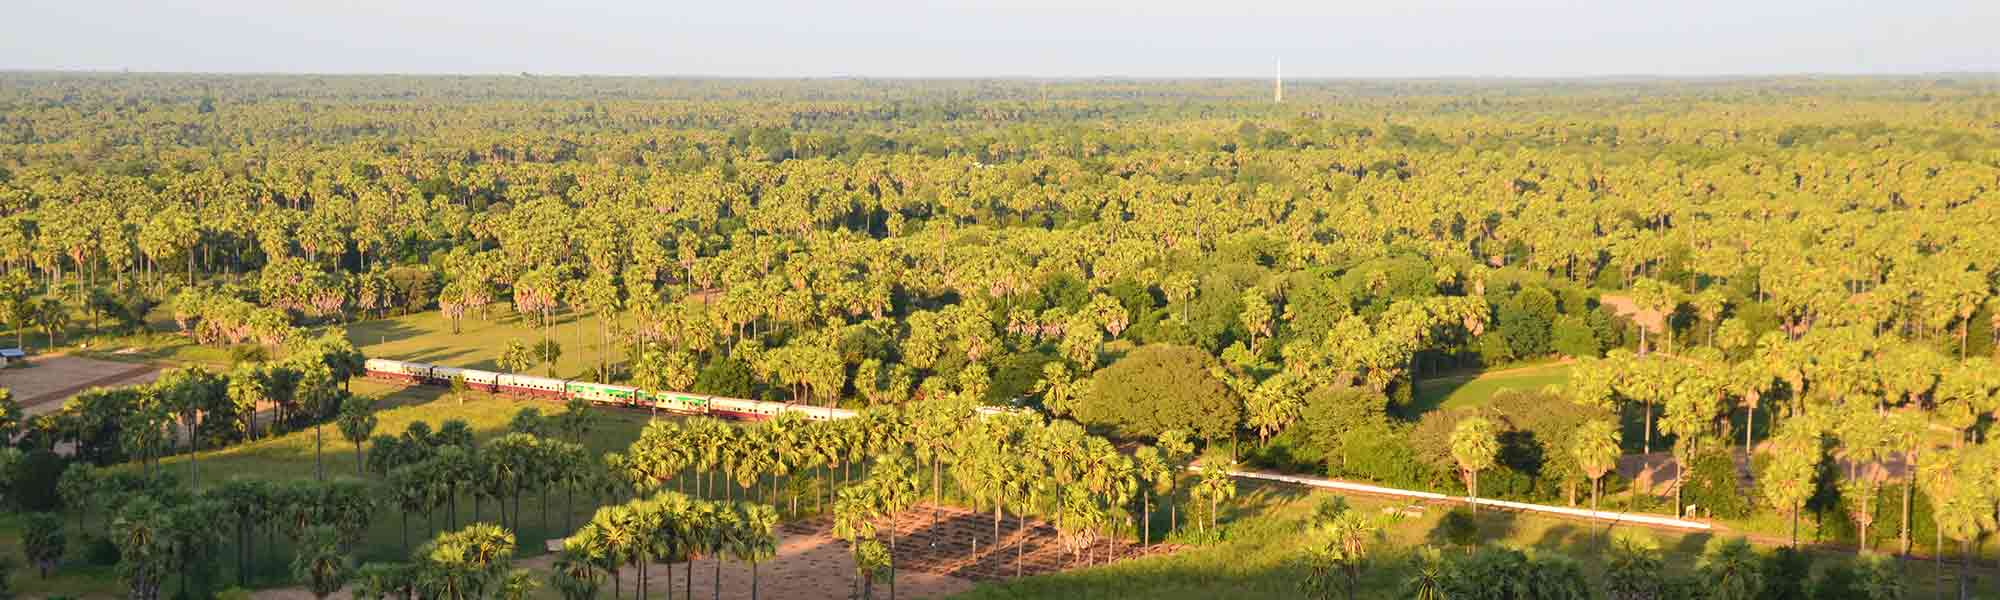 Toglinje gjennom grønnt landskap med palmer i Myanmar